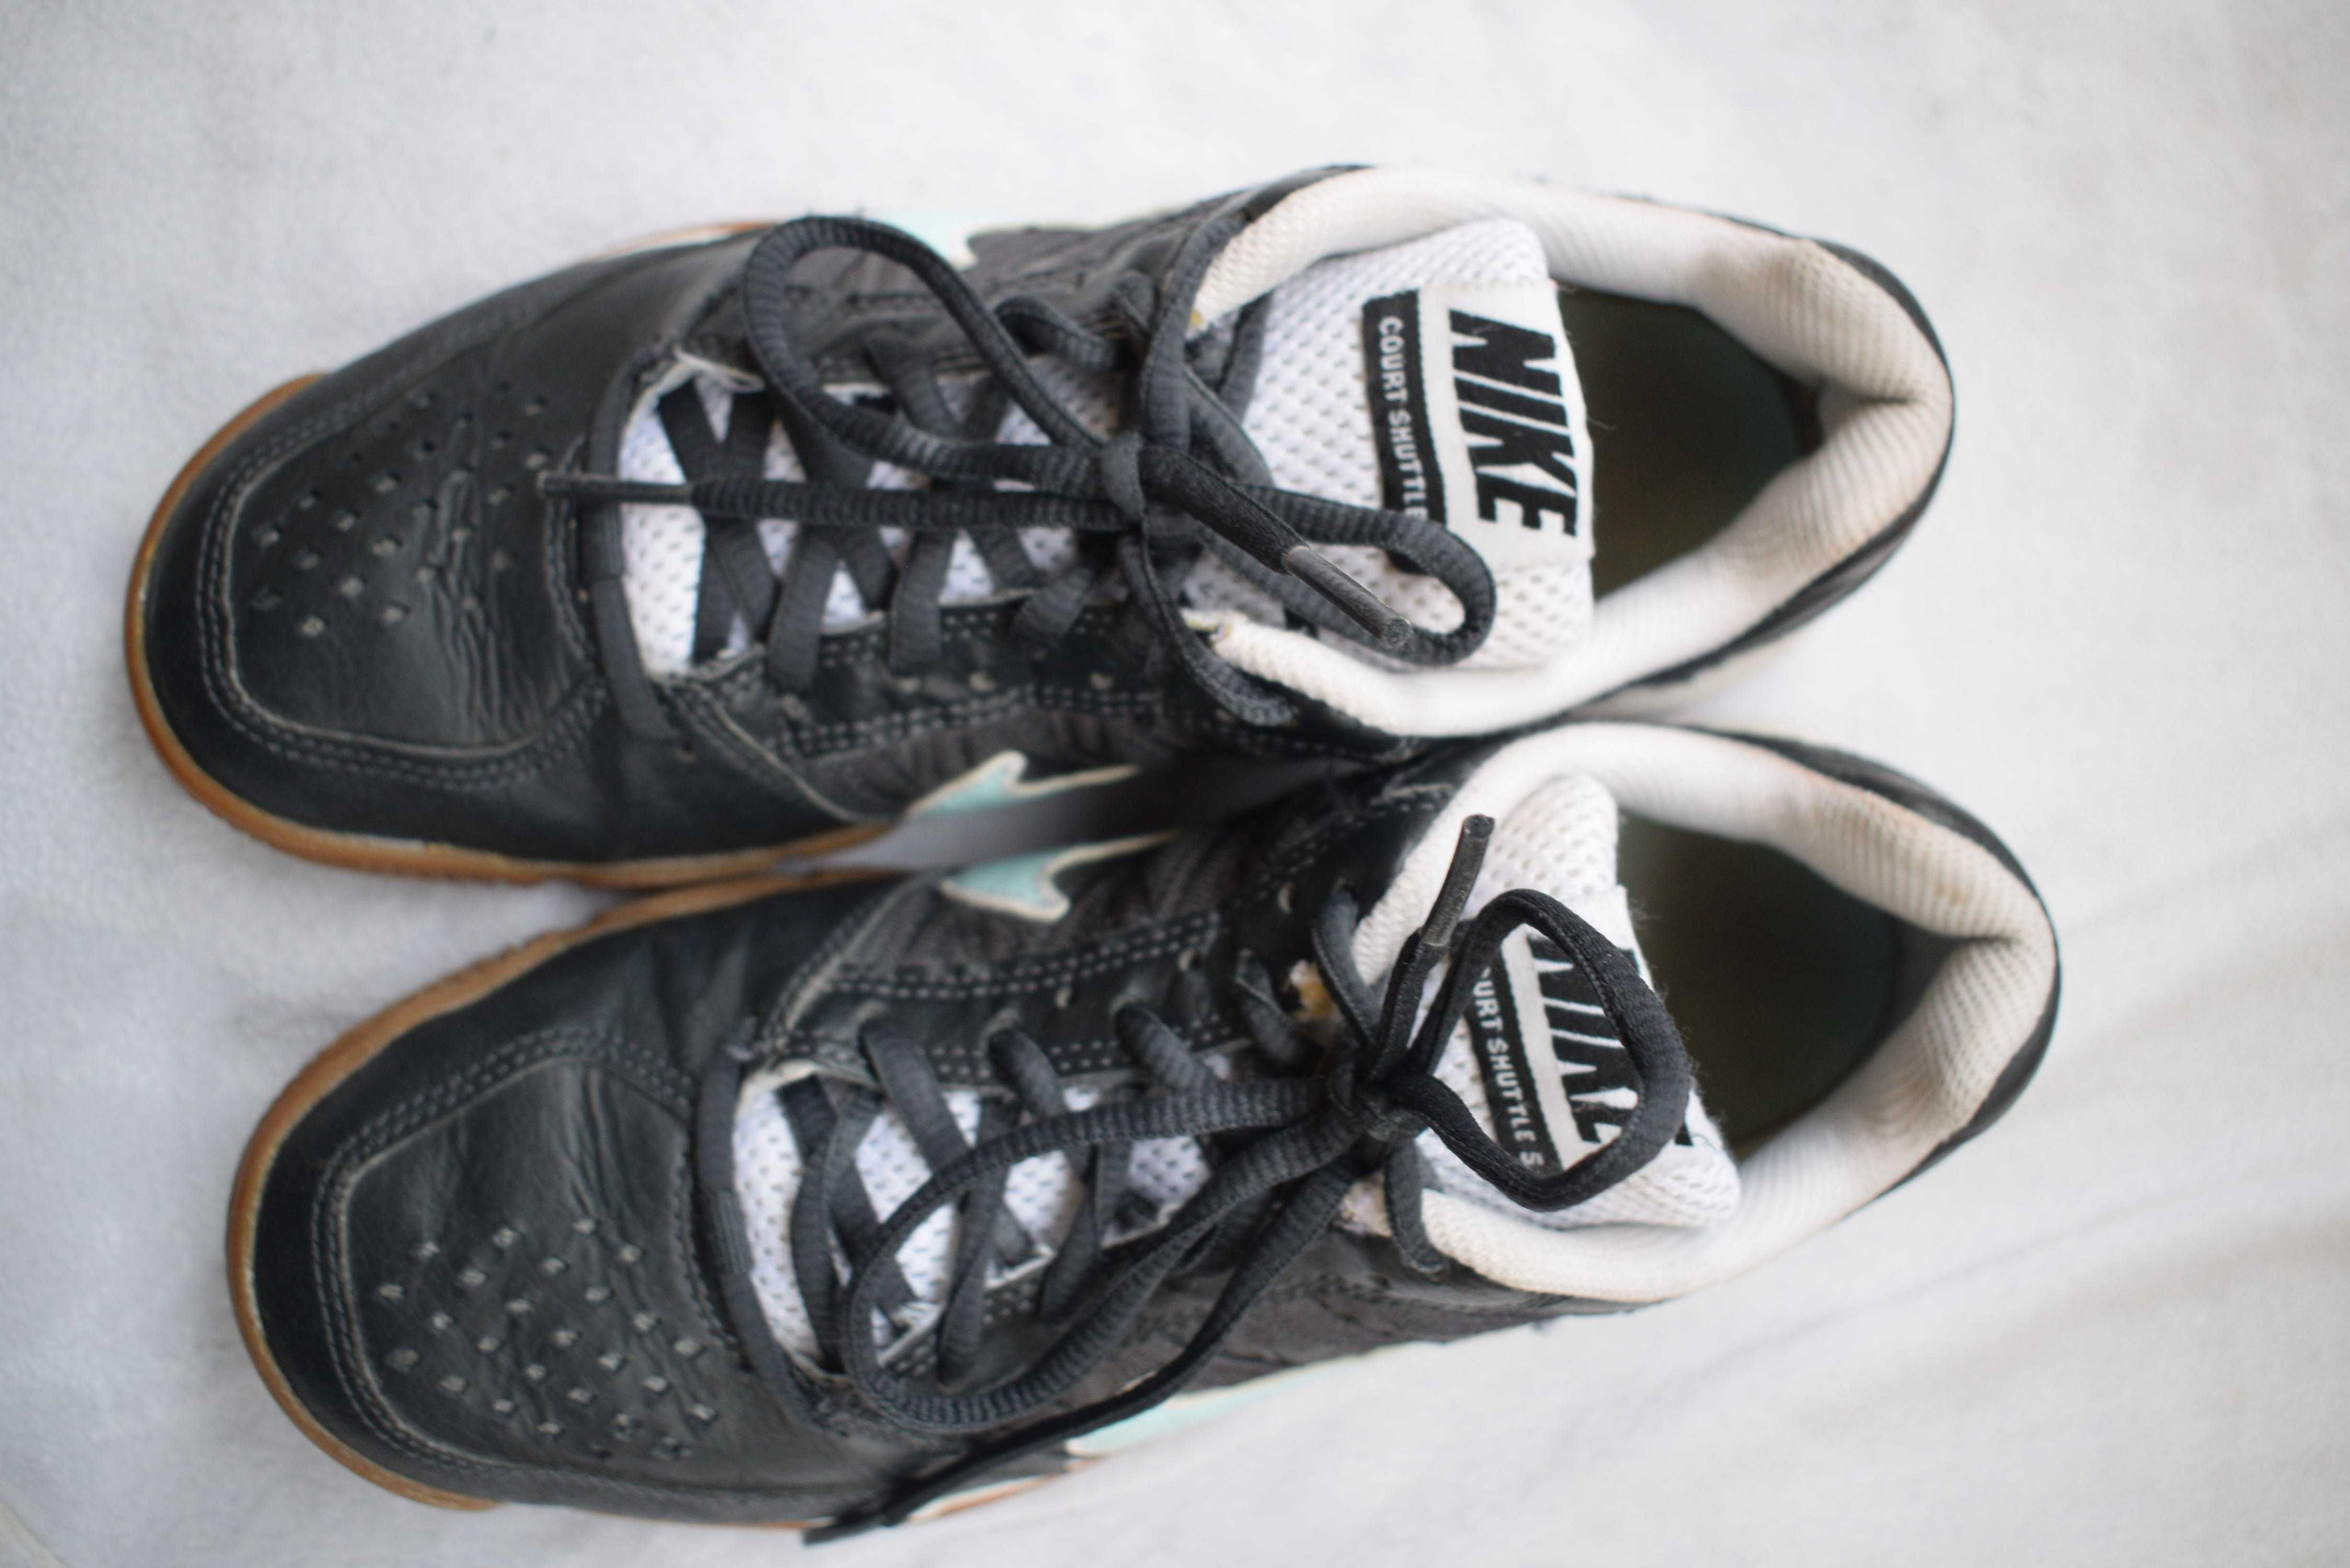 беговые кроссовки кросовки кеды мокасины Nike Найк р. 37,5 23,7 см